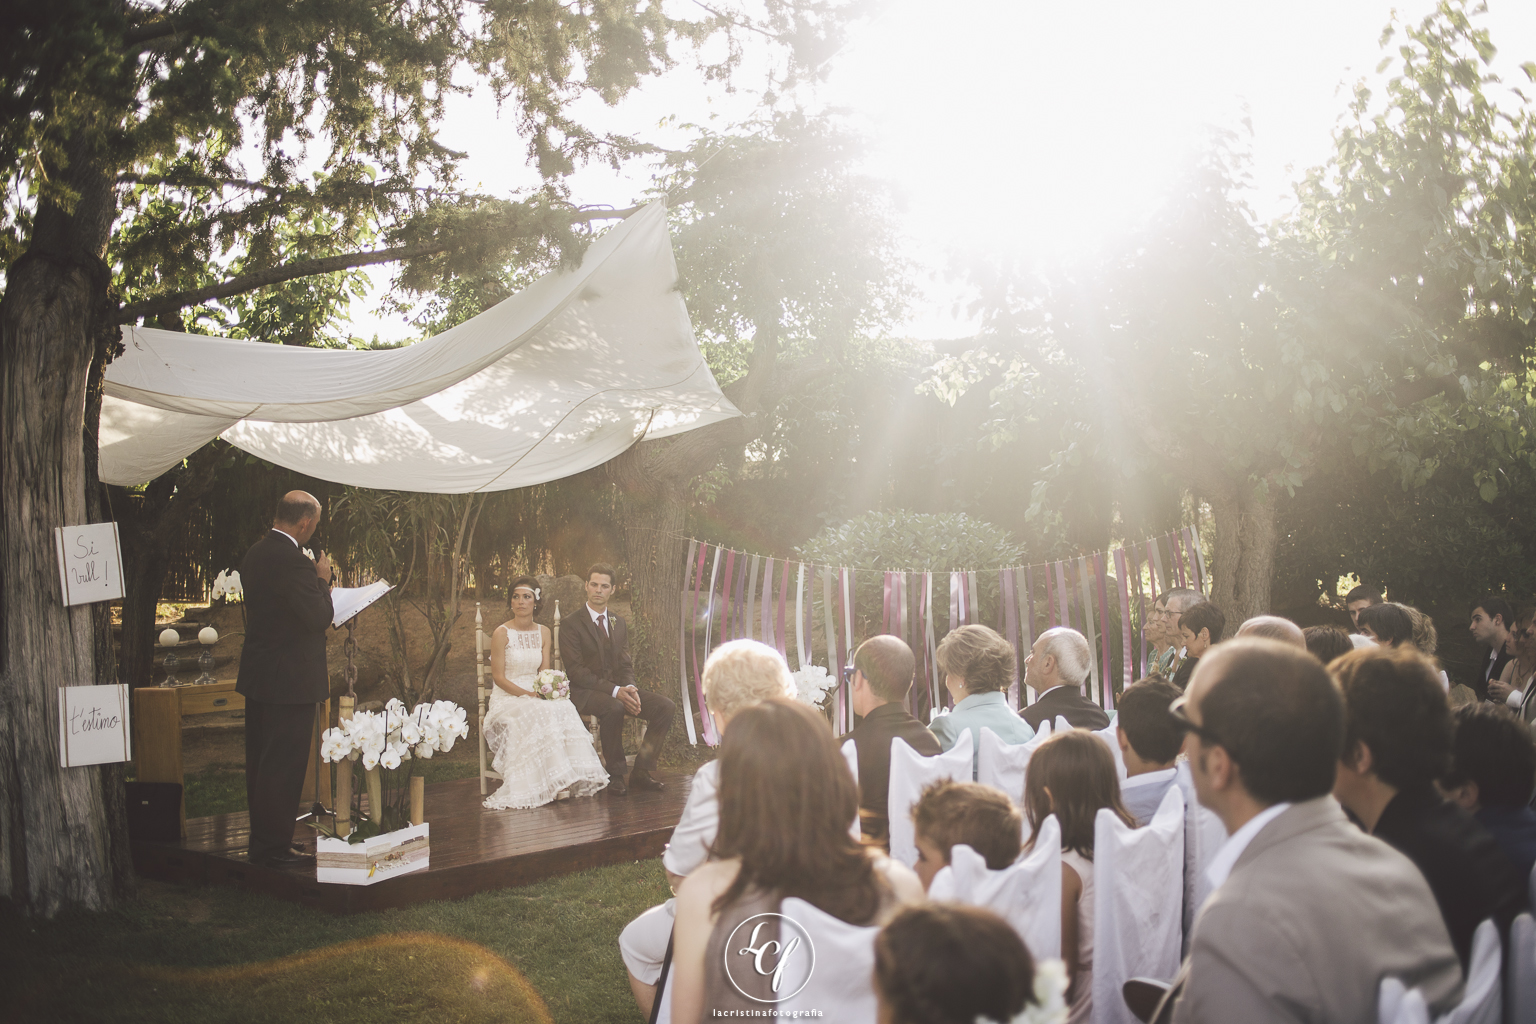 Fotógrafo de boda Barcelona :: Fotografía de boda en Barcelona :: Boda en una masía :: Fotografía de boda natural